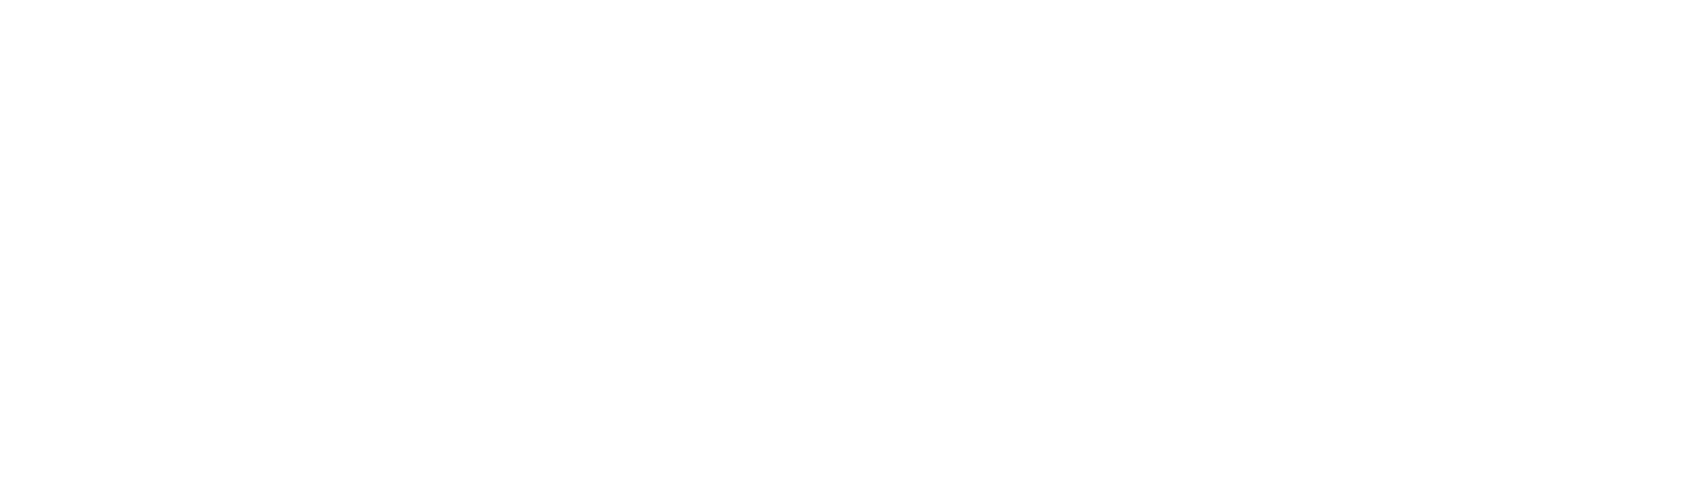 Shnayder Law LLC logo